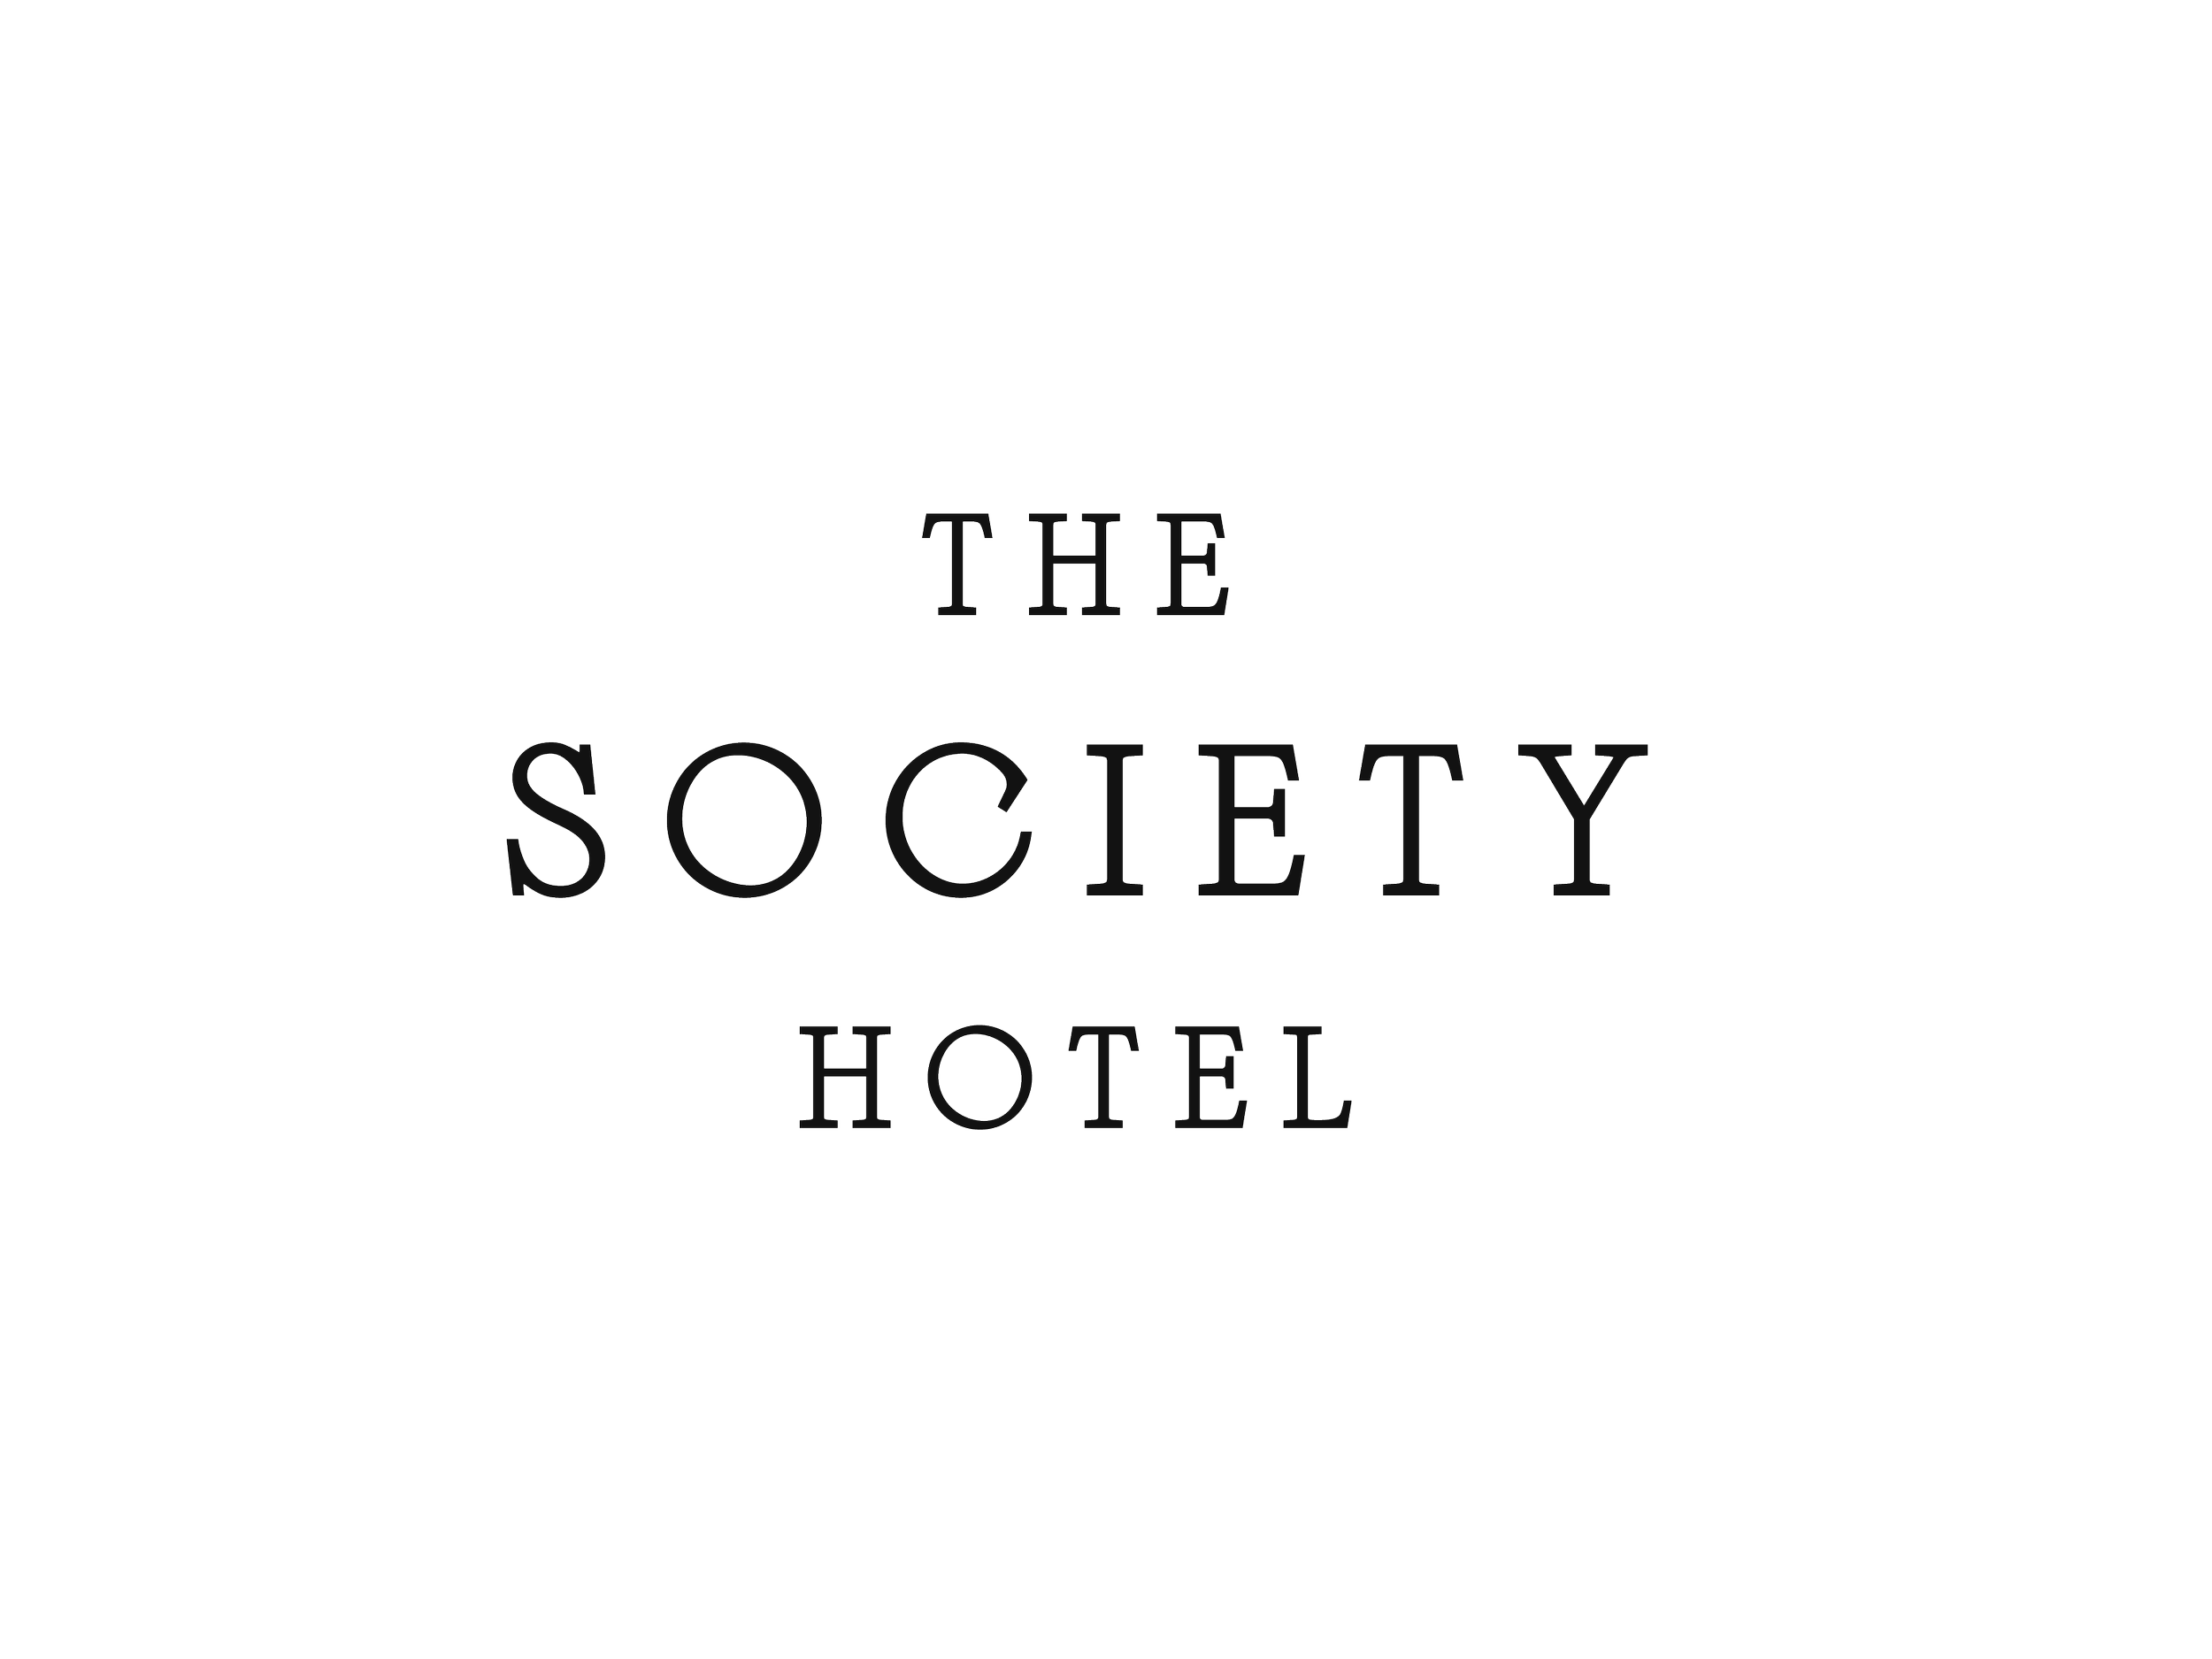 Society Hotel Lockup_1.png